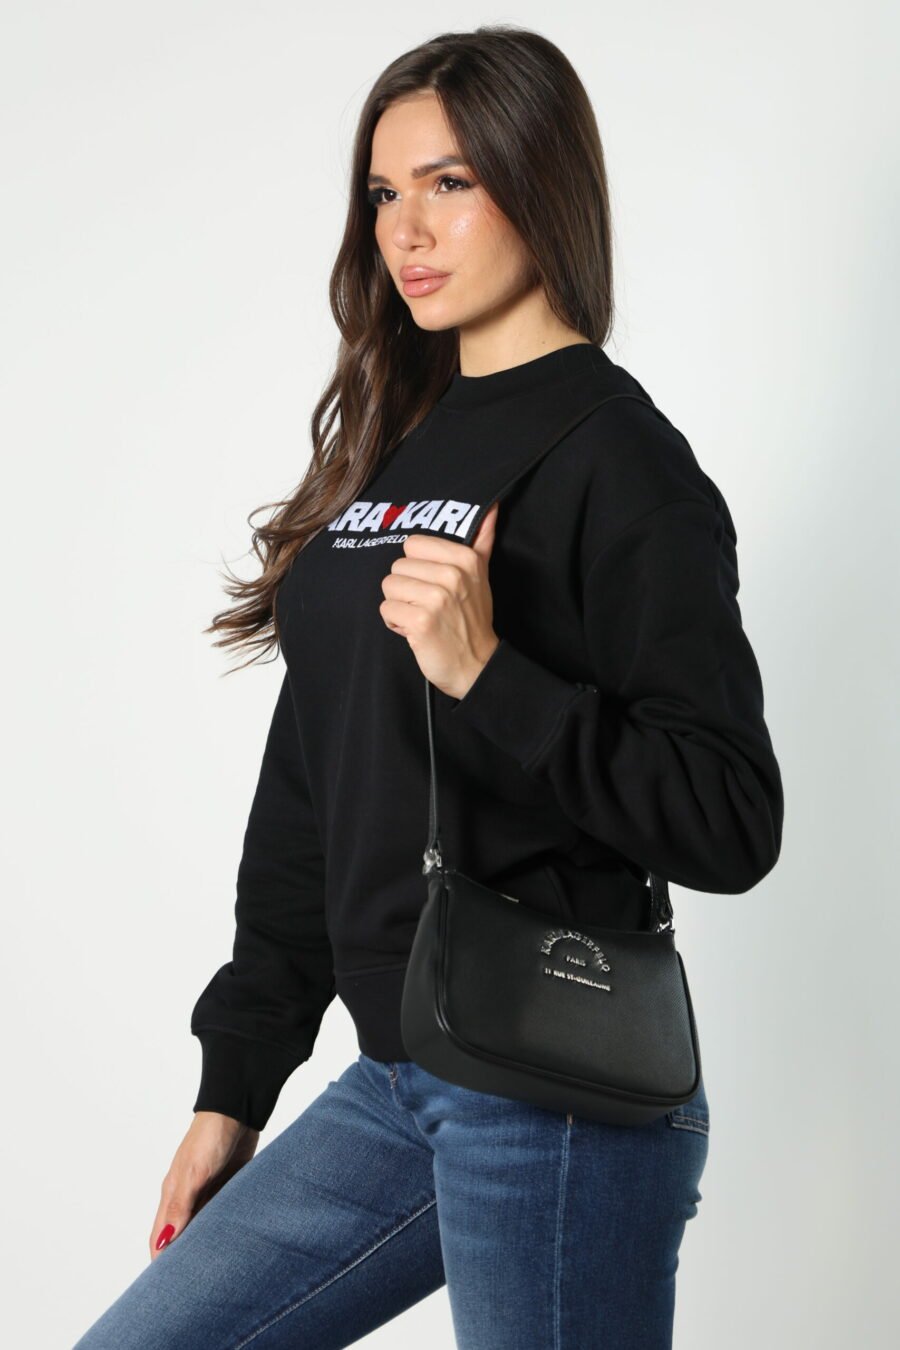 Black shoulder bag with mini-logo "rue st guillaume" - 8052865435499 381 1 scaled